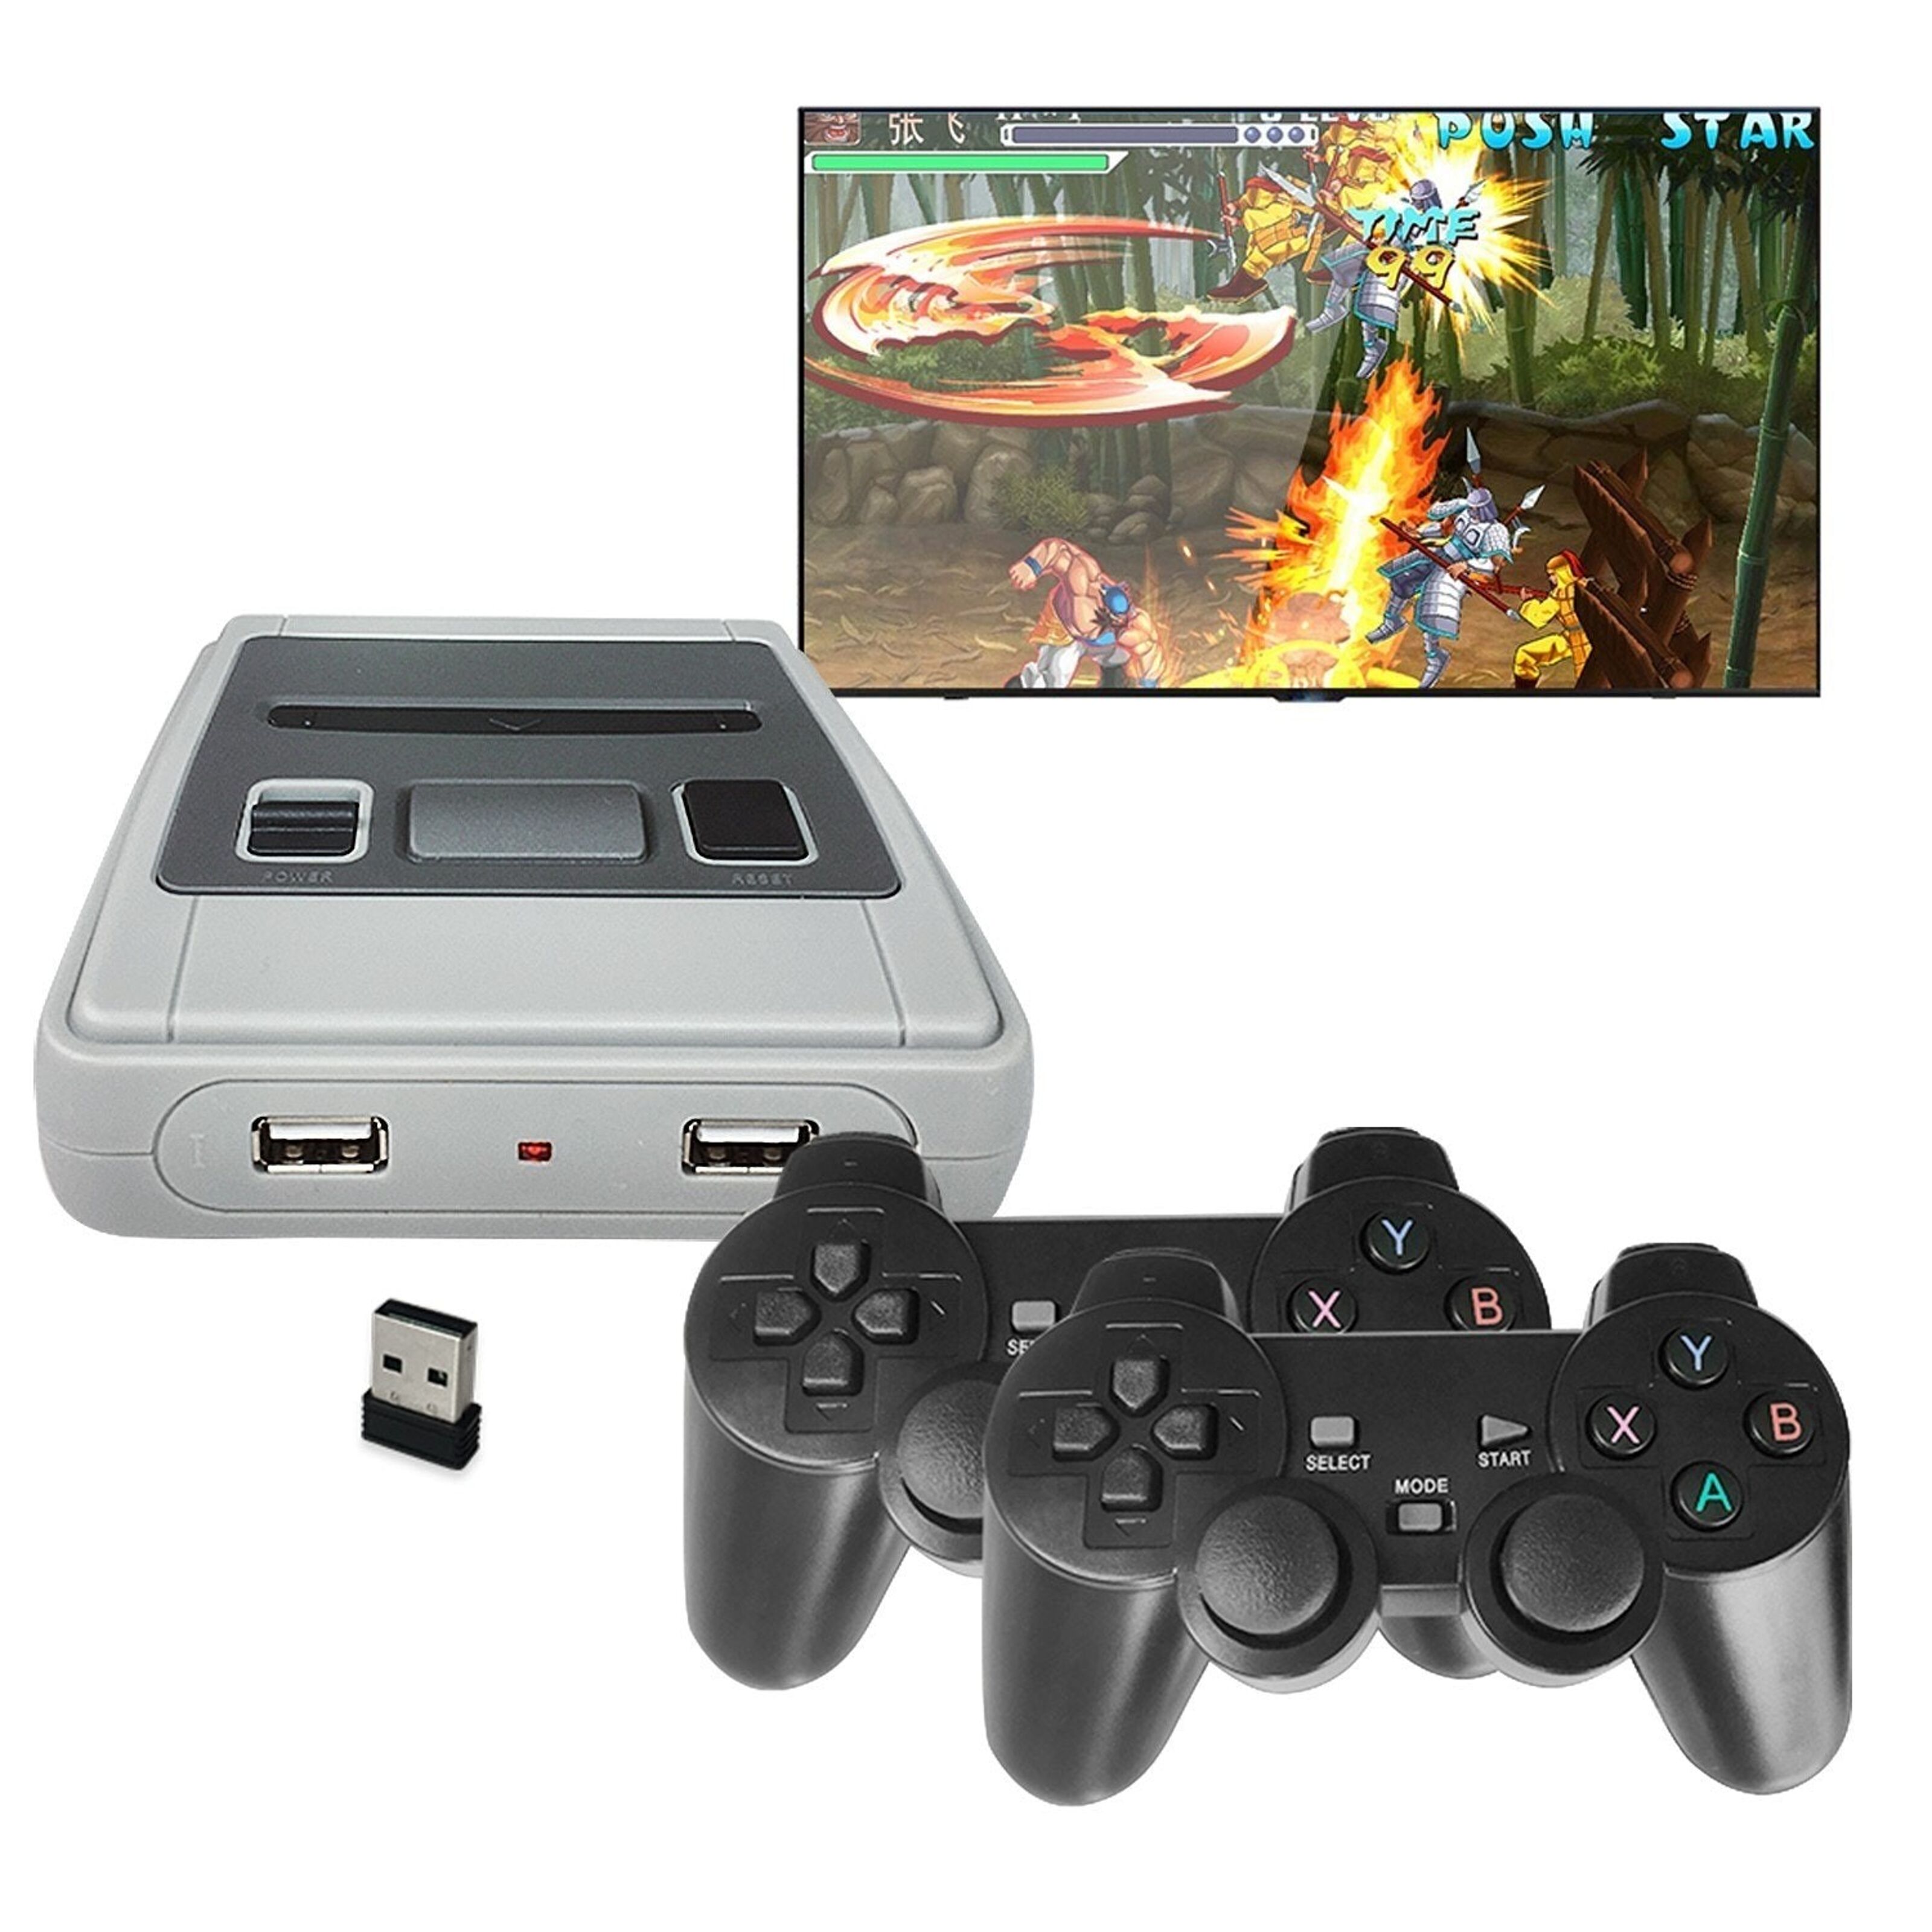 Consola de videojuegos retro Full HD1080P, con 2 mandos inalámbricos.  Incluye 620 juegos clásicos de 8 bits.